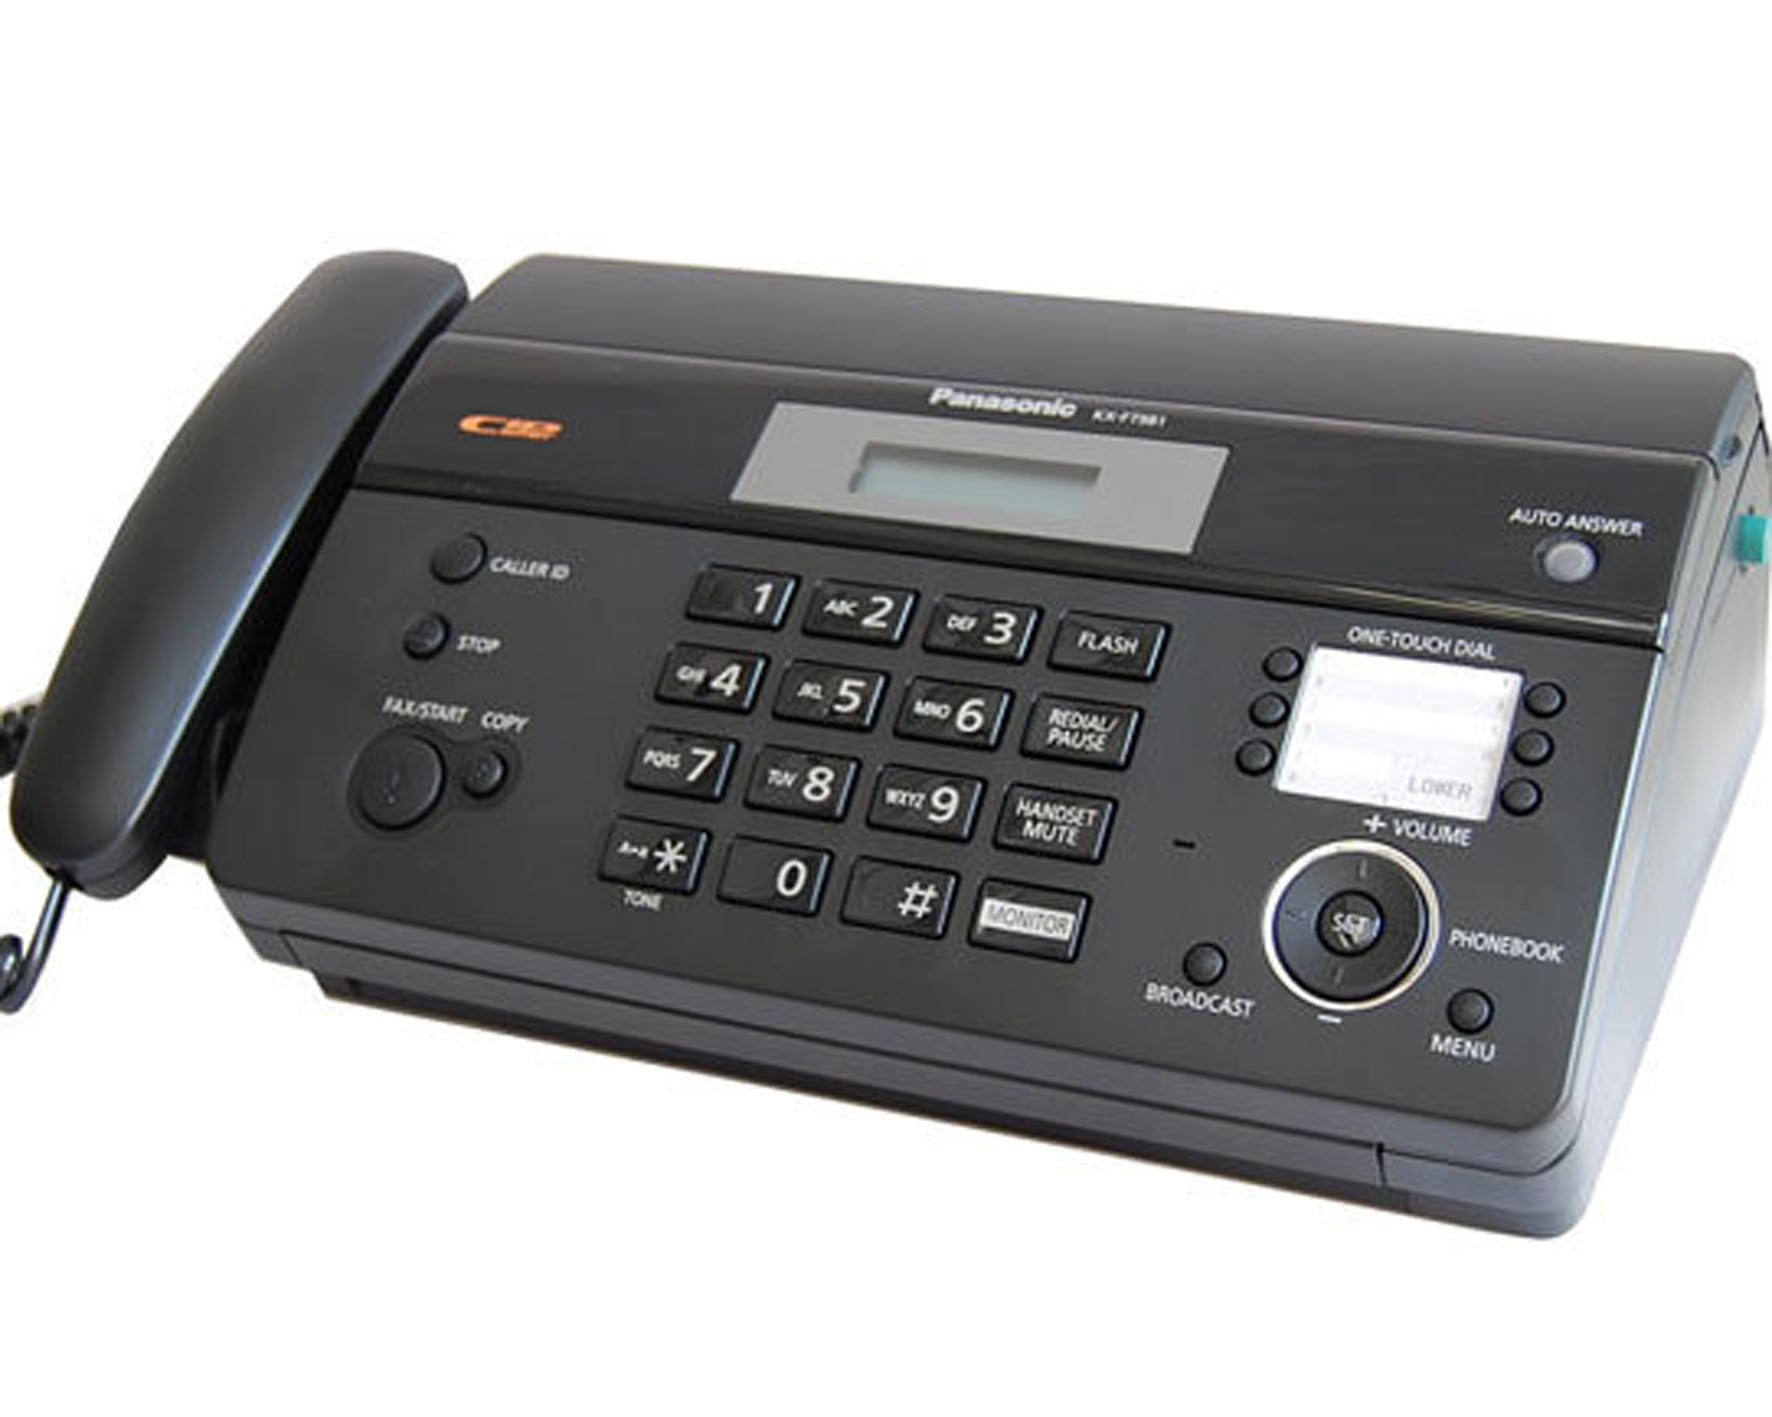 Máy fax Panasonic KX-FT983 (KX-FT983CX) - giấy nhiệt